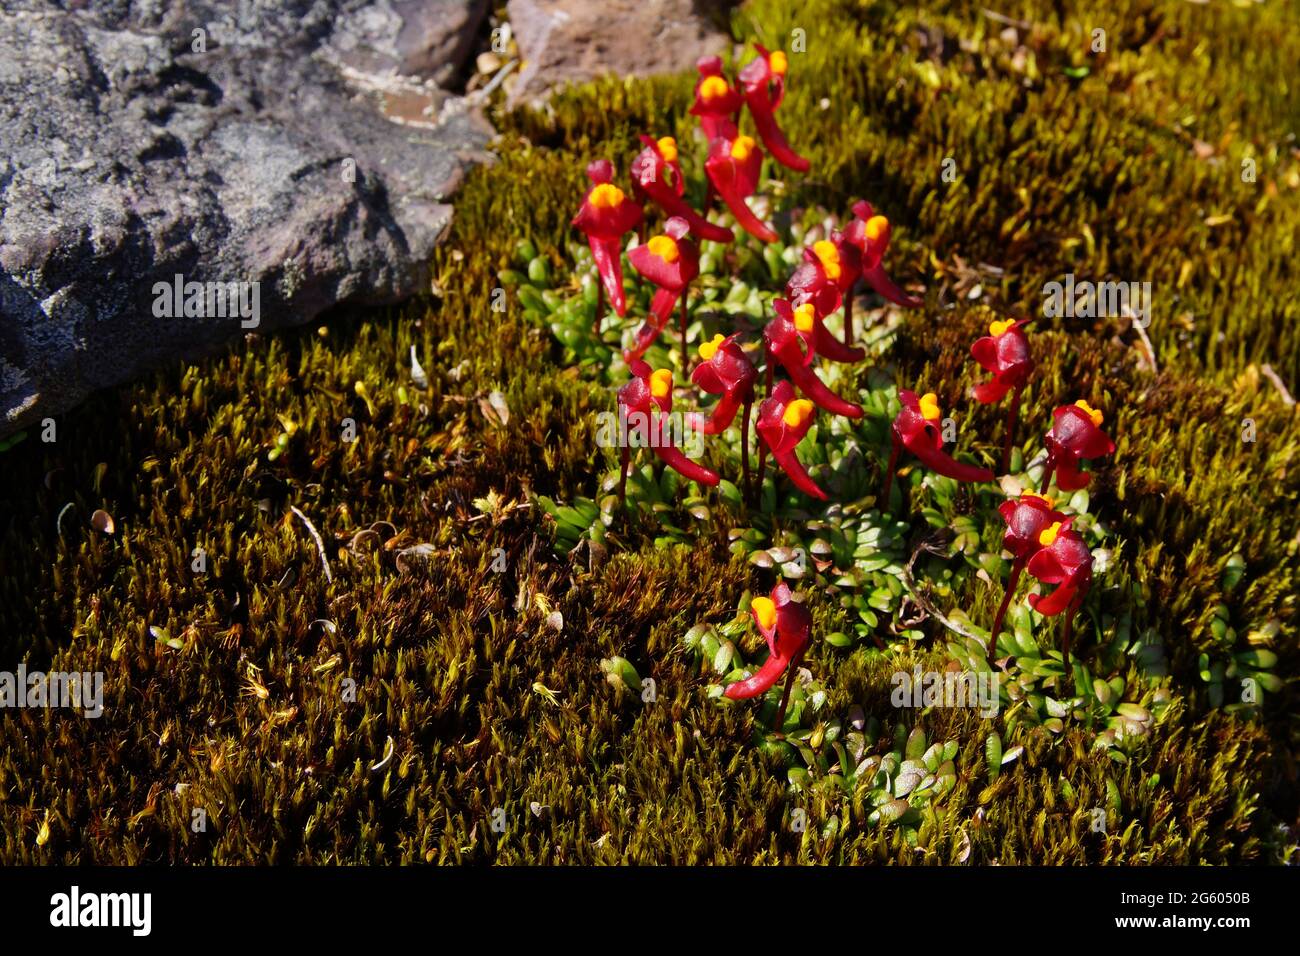 Large group of bladderwort Utricularia menziesii flowers, Australia Stock Photo